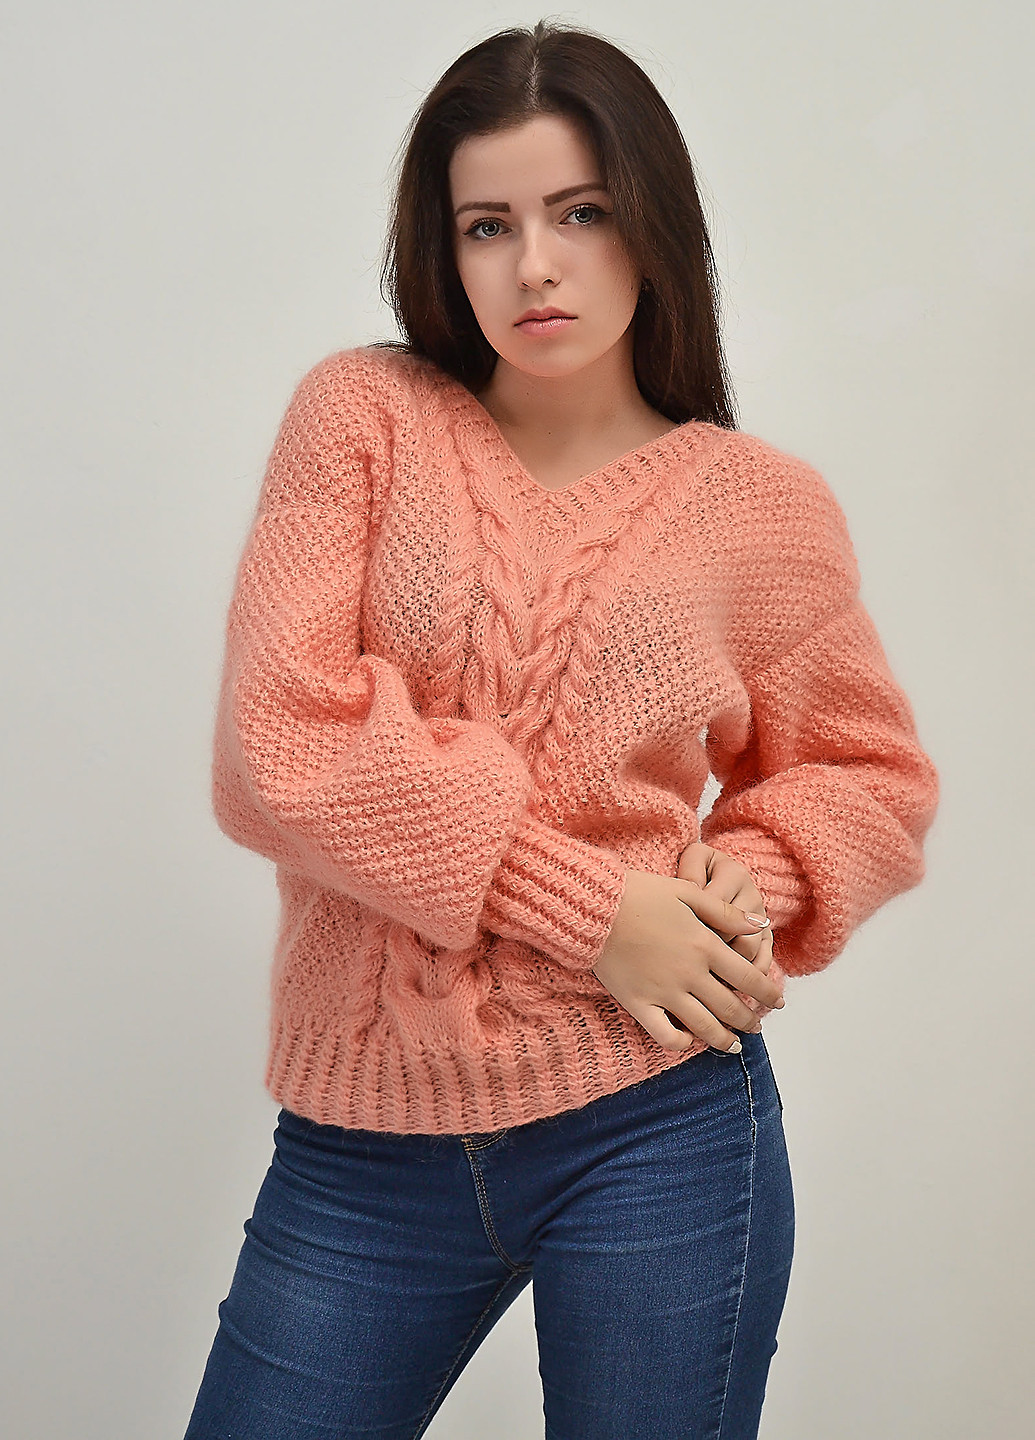 Персиковый демисезонный пуловер пуловер Keslove